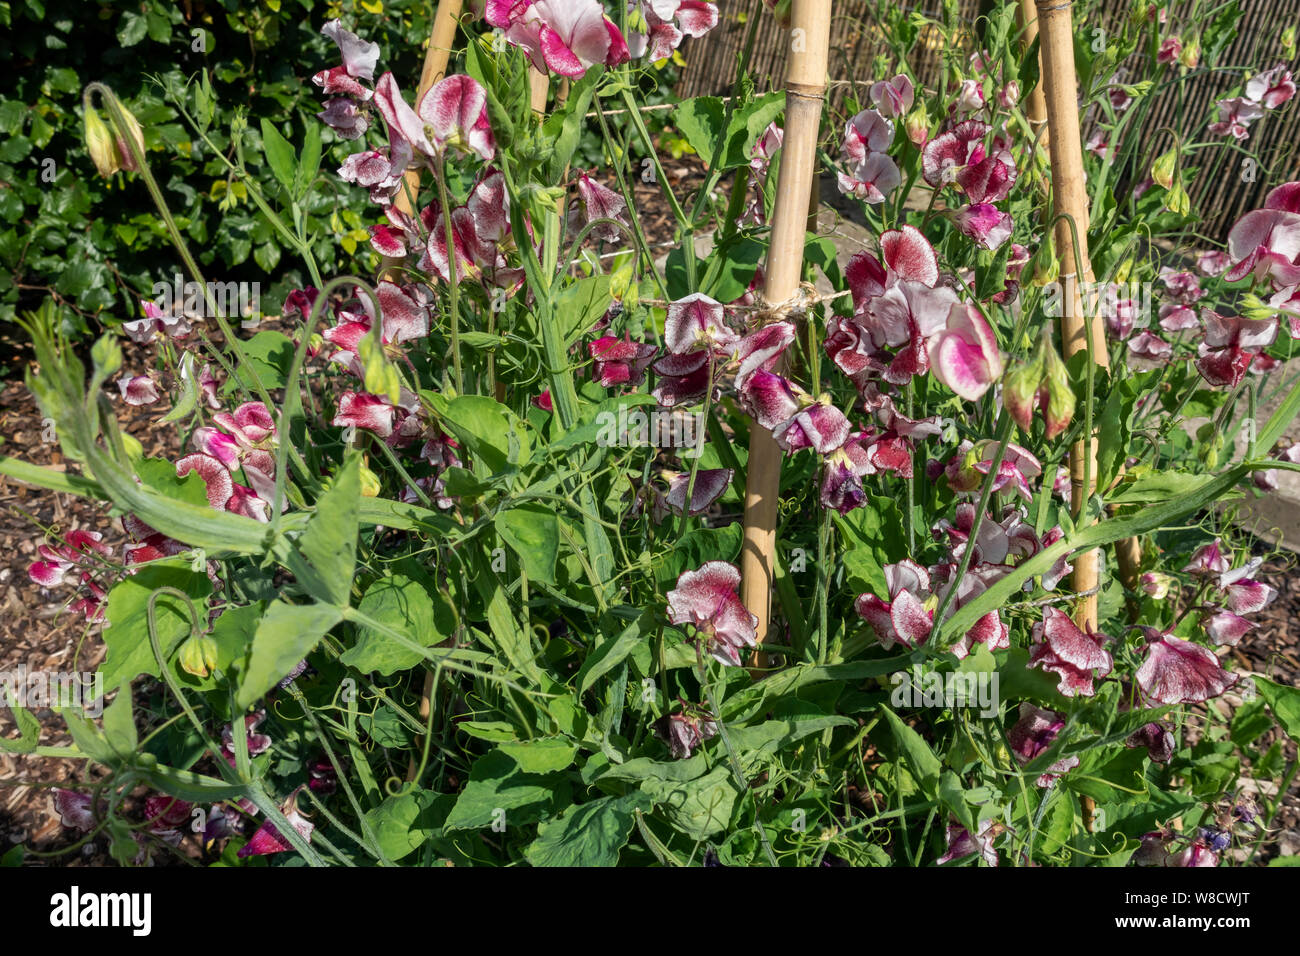 Gros plan de pois doux (lathyrus odoratus) fleurs ‘Wiltshire Ripple’ poussant un jardin de bambou canne à sucre bâtons de wigwam dans un jardin Angleterre Royaume-Uni Banque D'Images